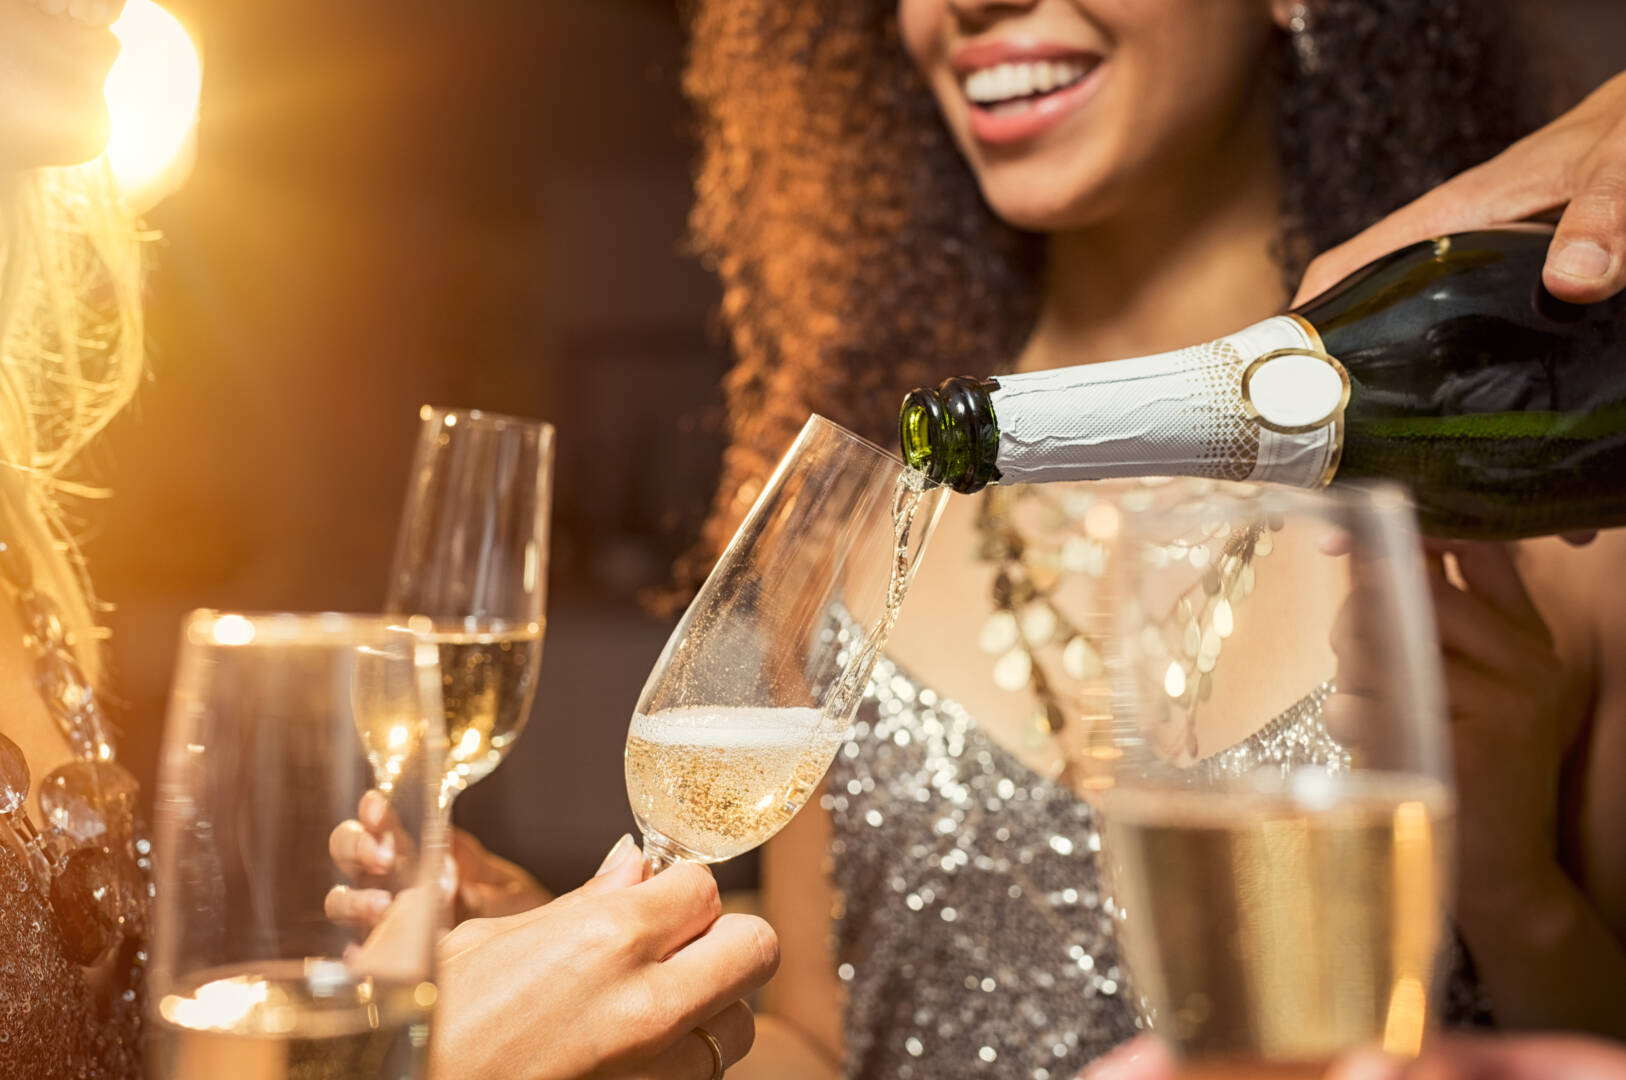 Etrafındaki arkadaşlarıyla birlikte şişeden bardaklara şampanya döken el. Parti sırasında flütlere beyaz şarap döken elin yakın çekimi. Yılbaşı kutlamasından detay görüntü.